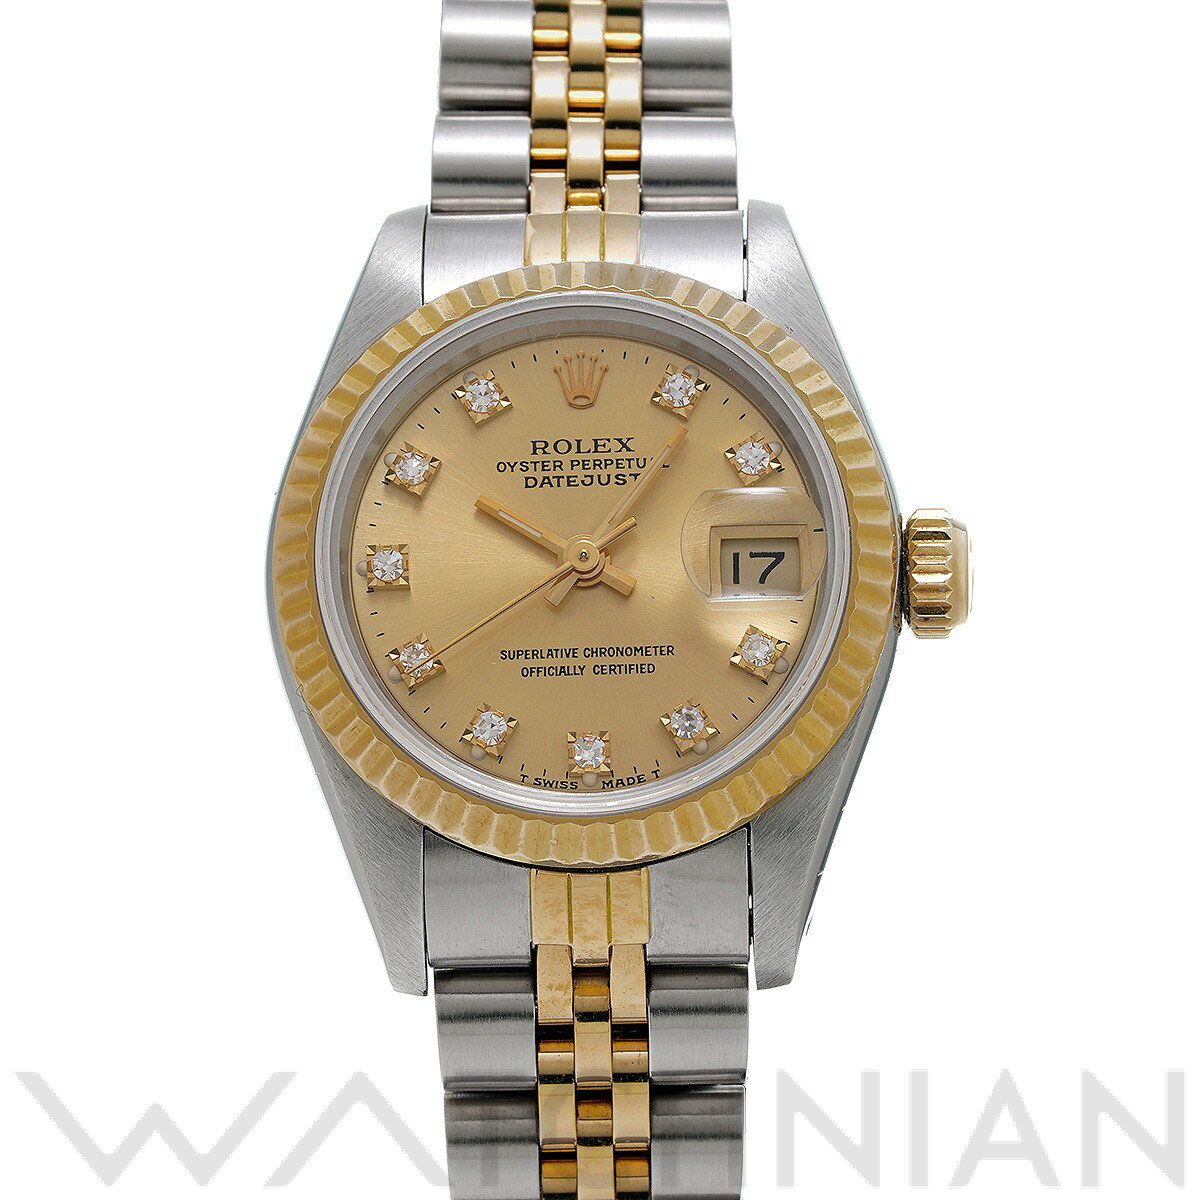 【中古】 ロレックス ROLEX デイトジャスト 69173G 97番台(1986年頃製造) シャンパン/ダイヤモンド レディース 腕時計